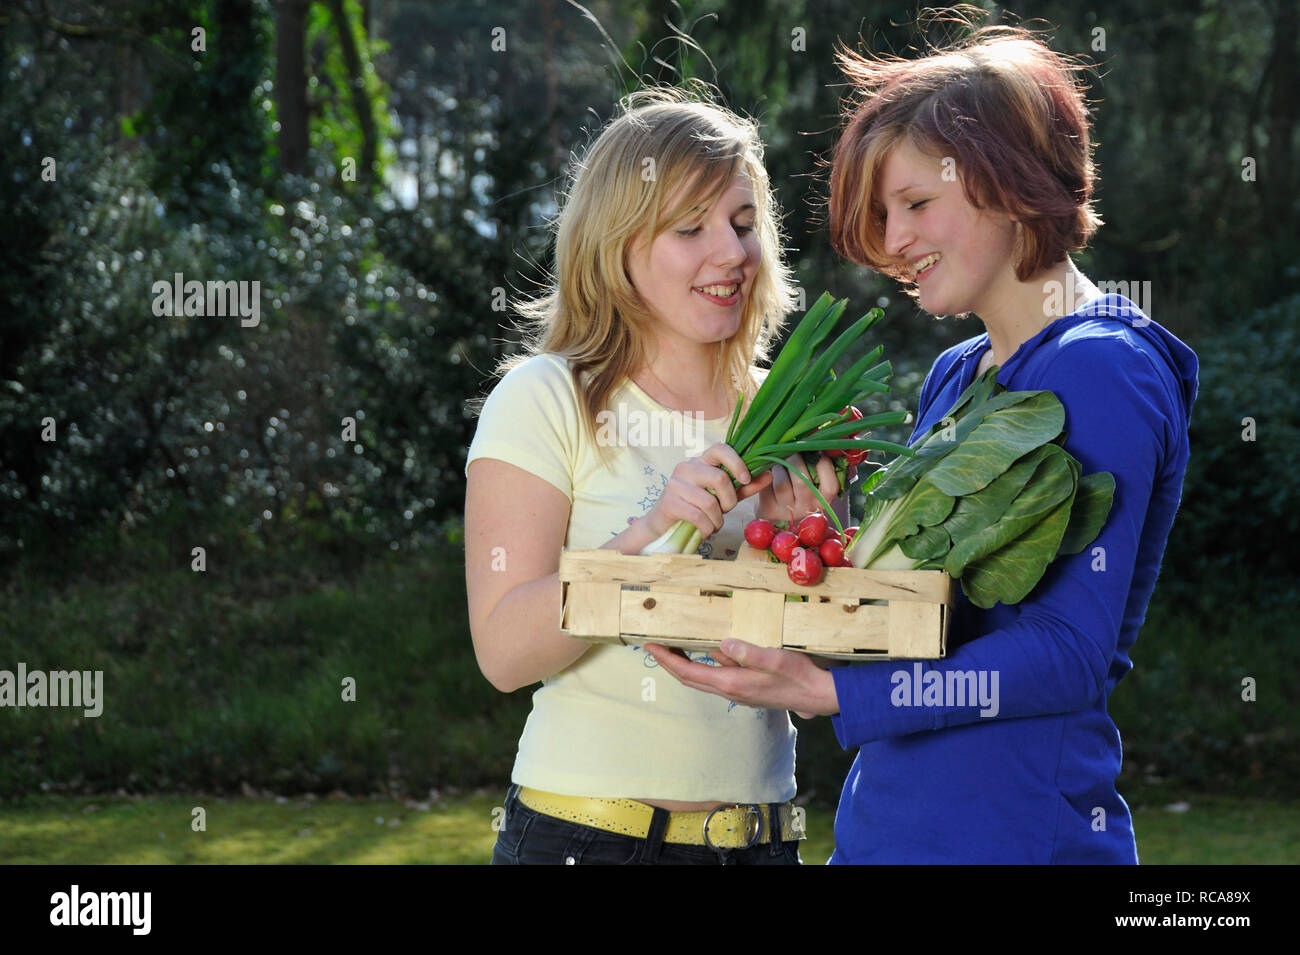 Gemüsekorb jungendliche zwei Frauen mit im Arm - junges Gemüse | deux jeunes femmes avec le panier de légumes Banque D'Images